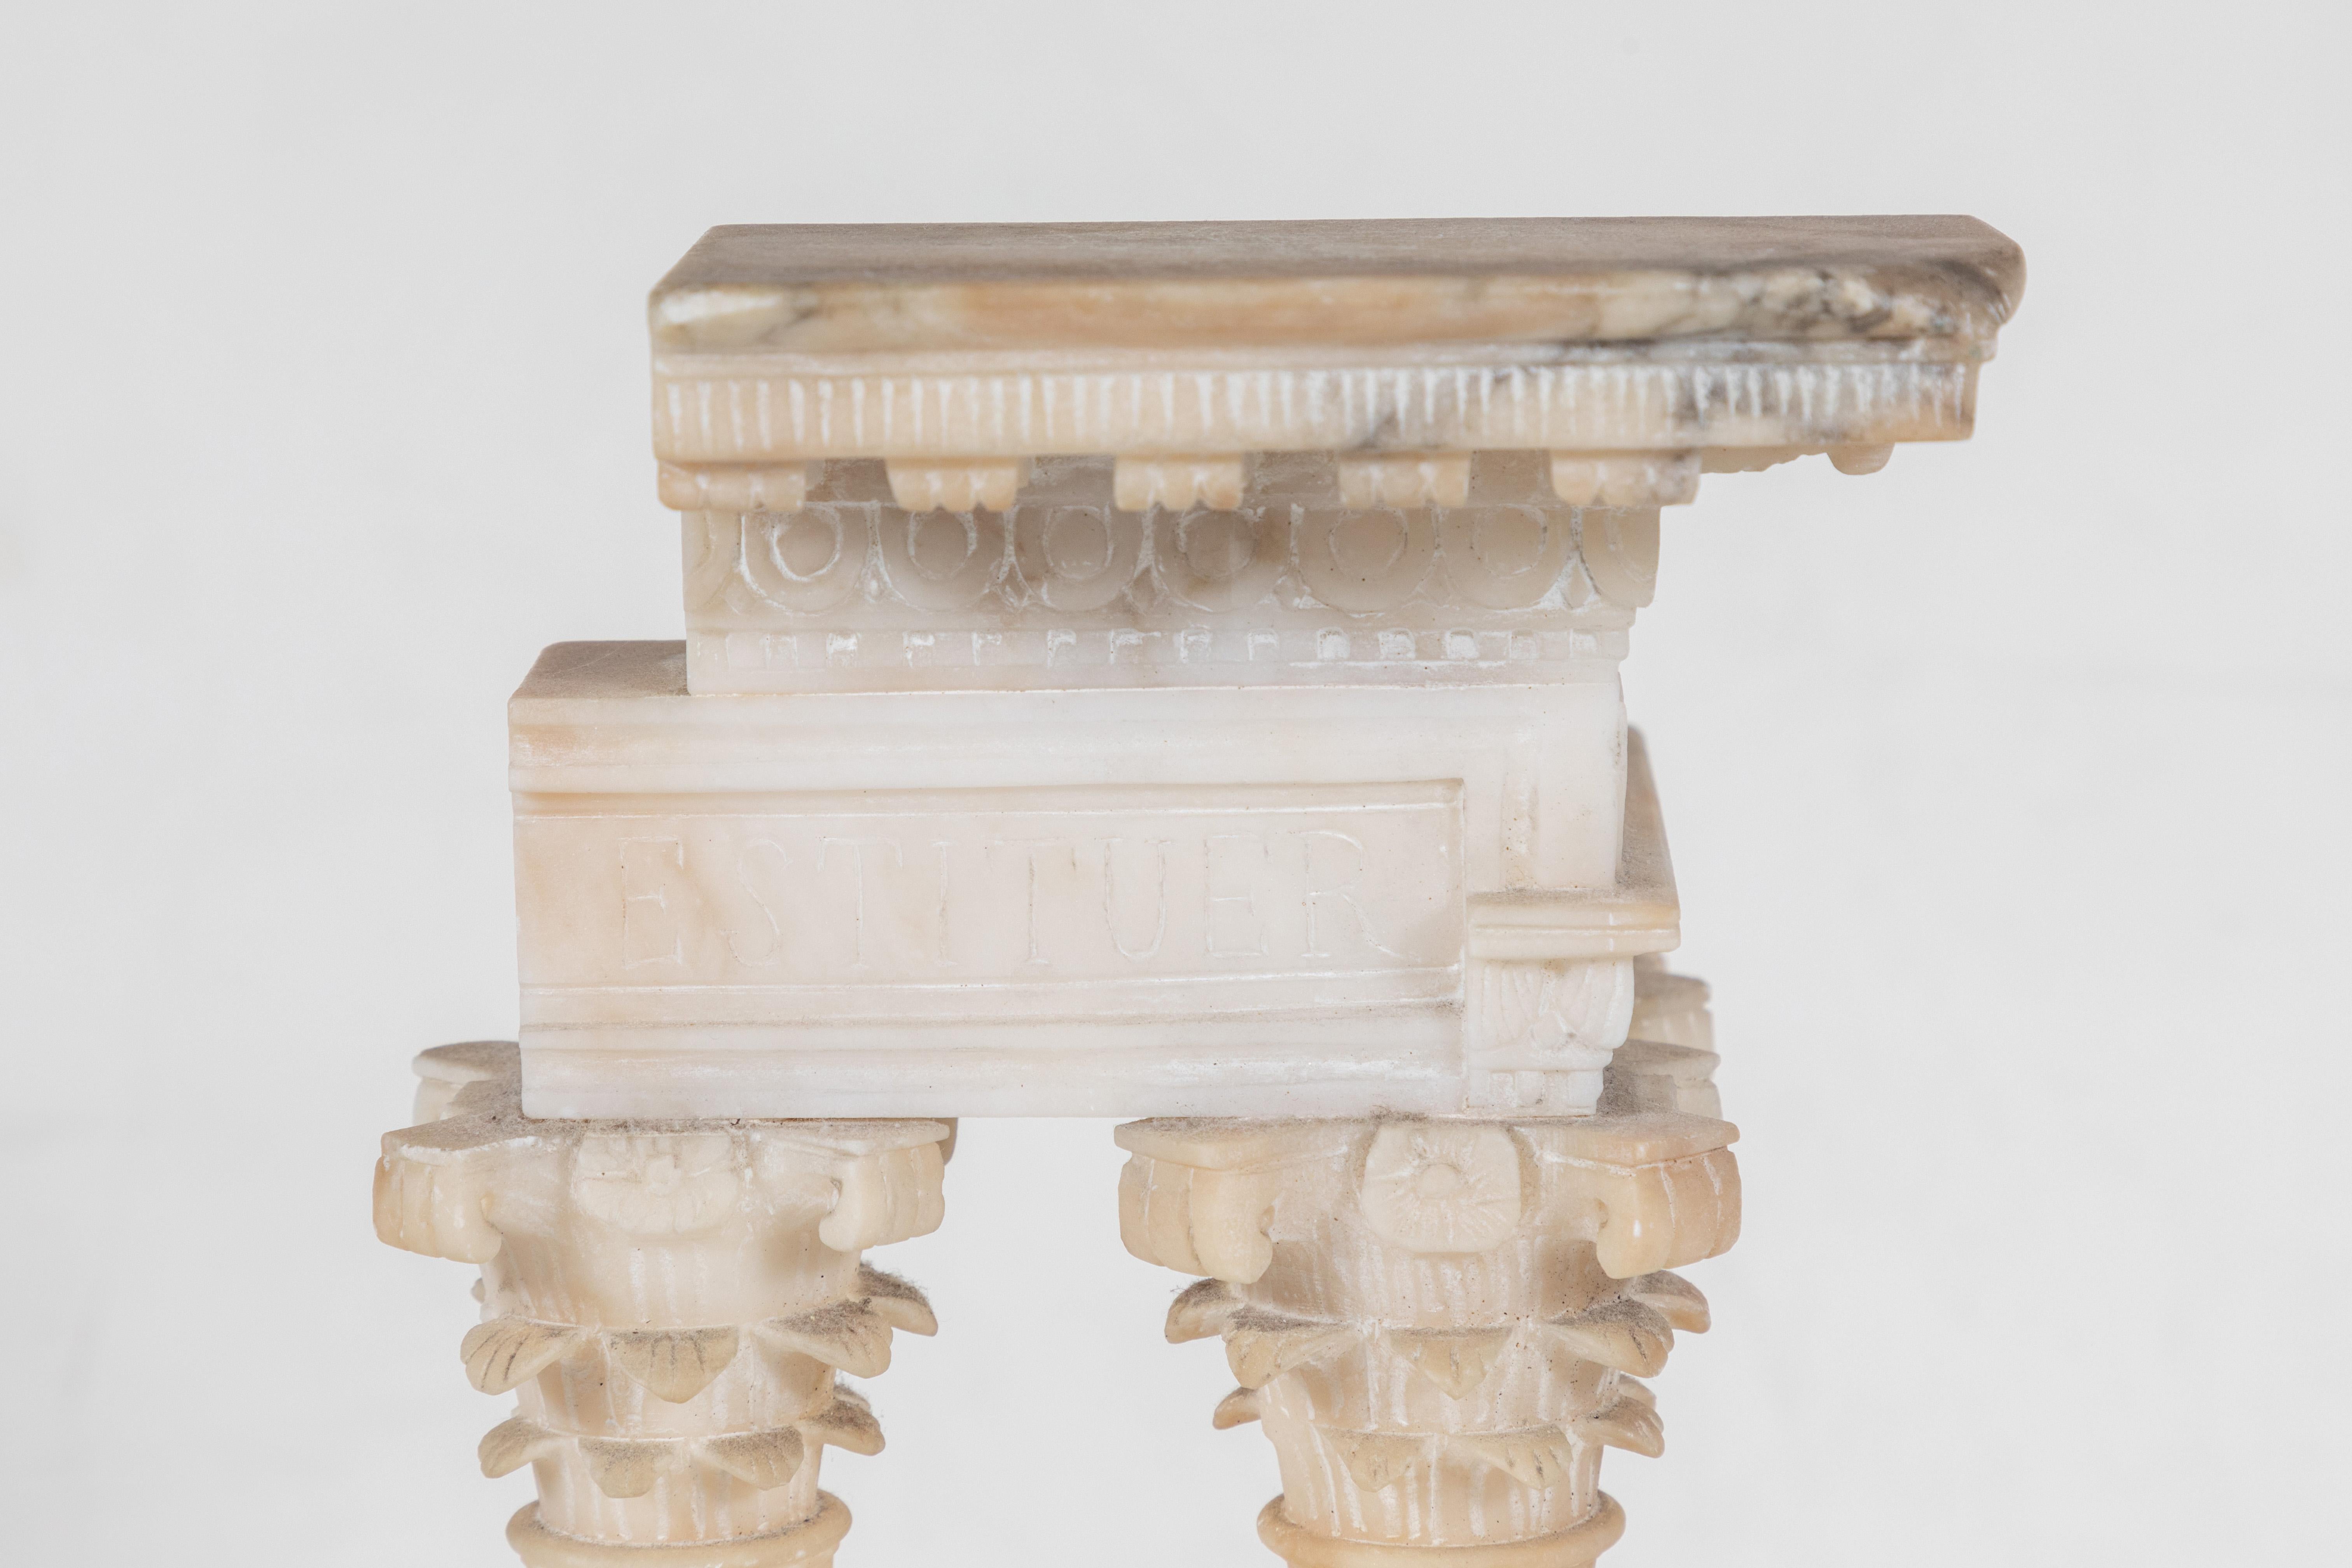 Hand-Carved Graceful, Alabaster, Architecture Model